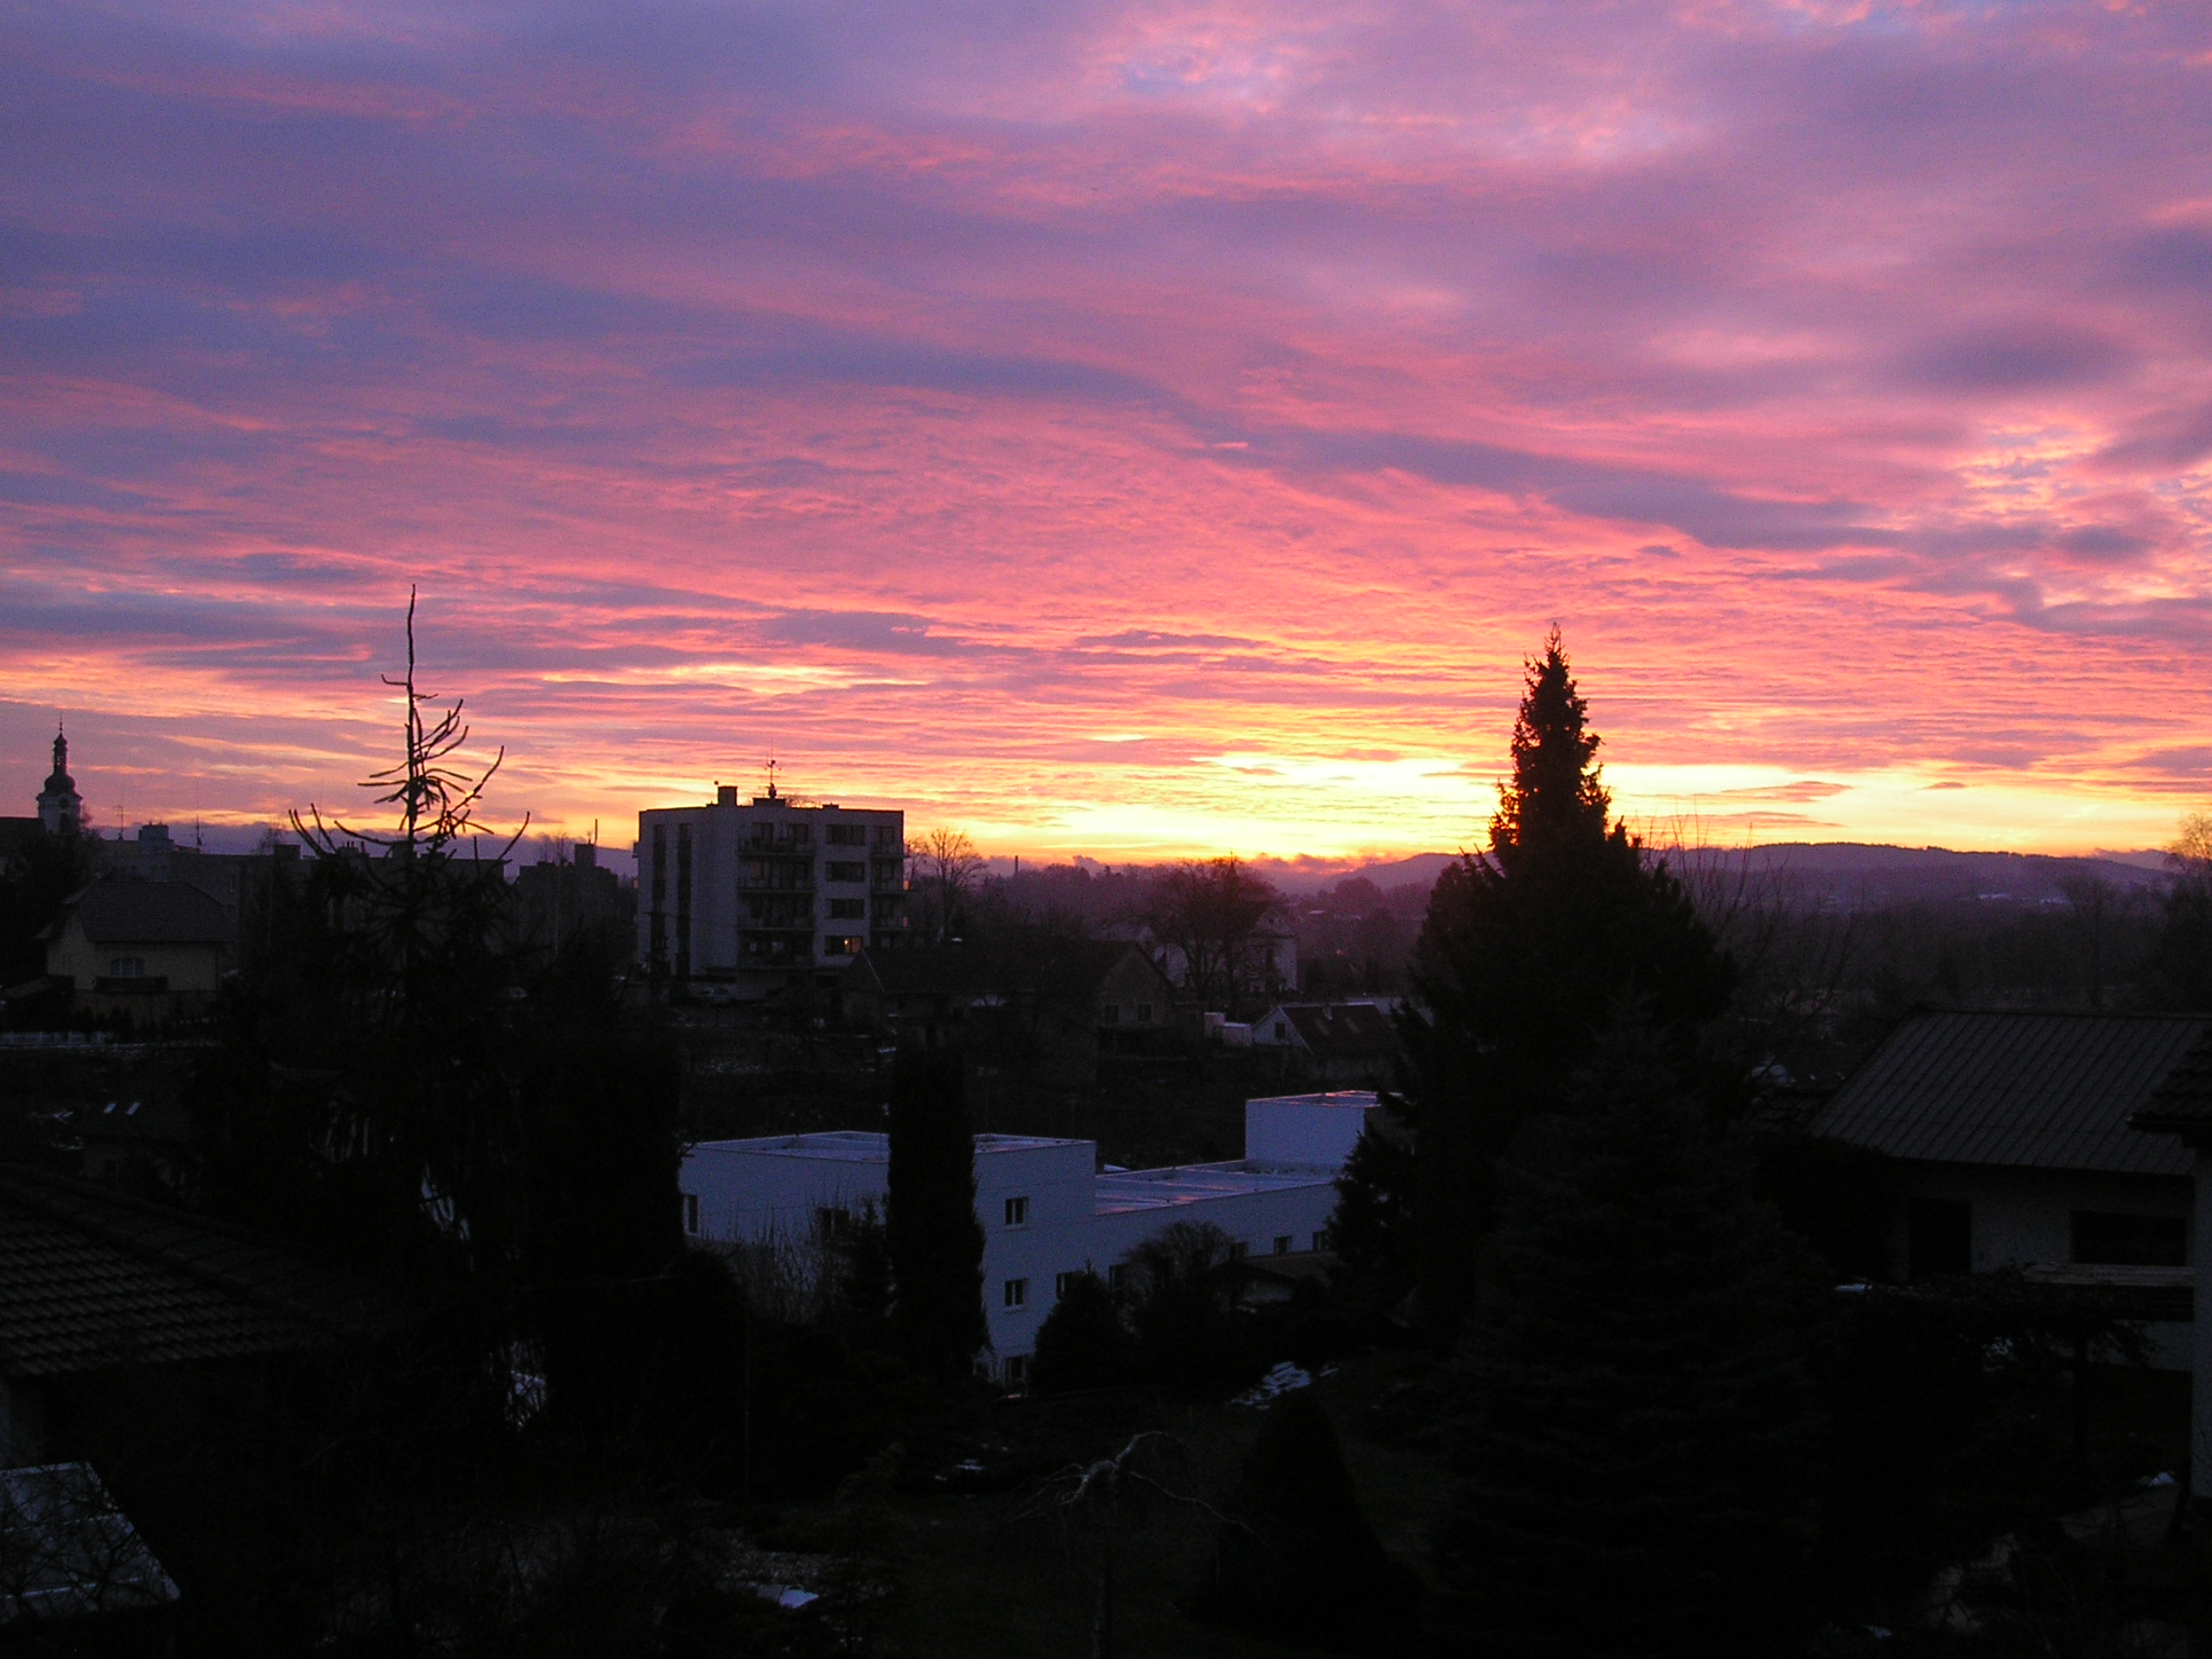 východ slunce - 9. leden 2011